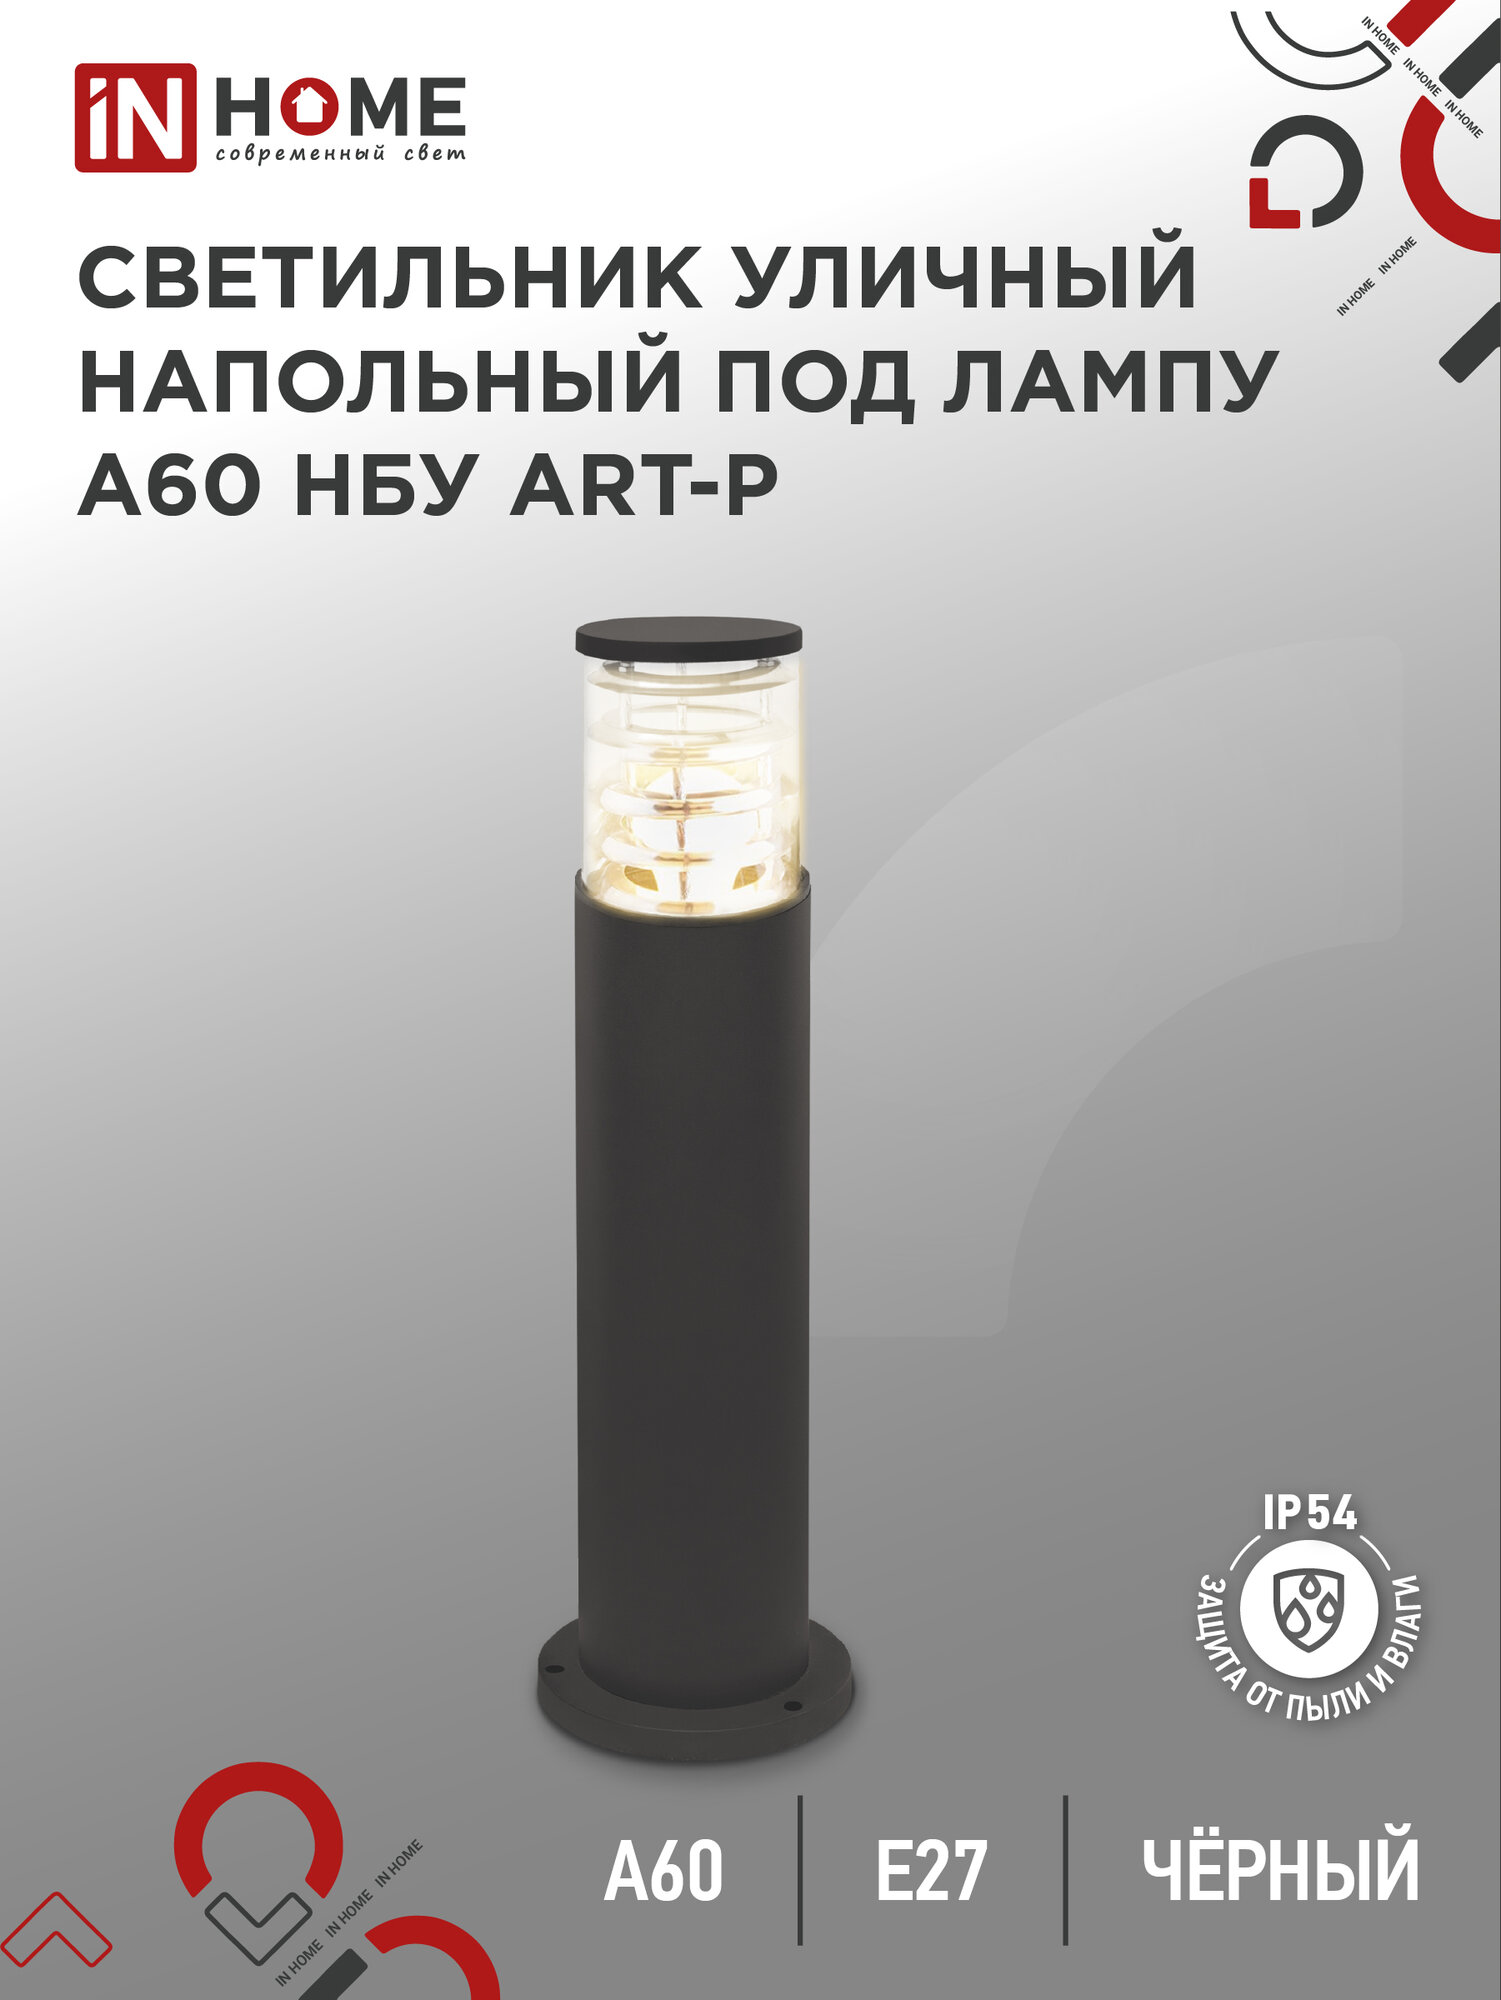 Светильник уличный напольный НБУ ART-PT-A60-BL алюминиевый под лампу А60 Е27 600мм черный IP65 IN HOME